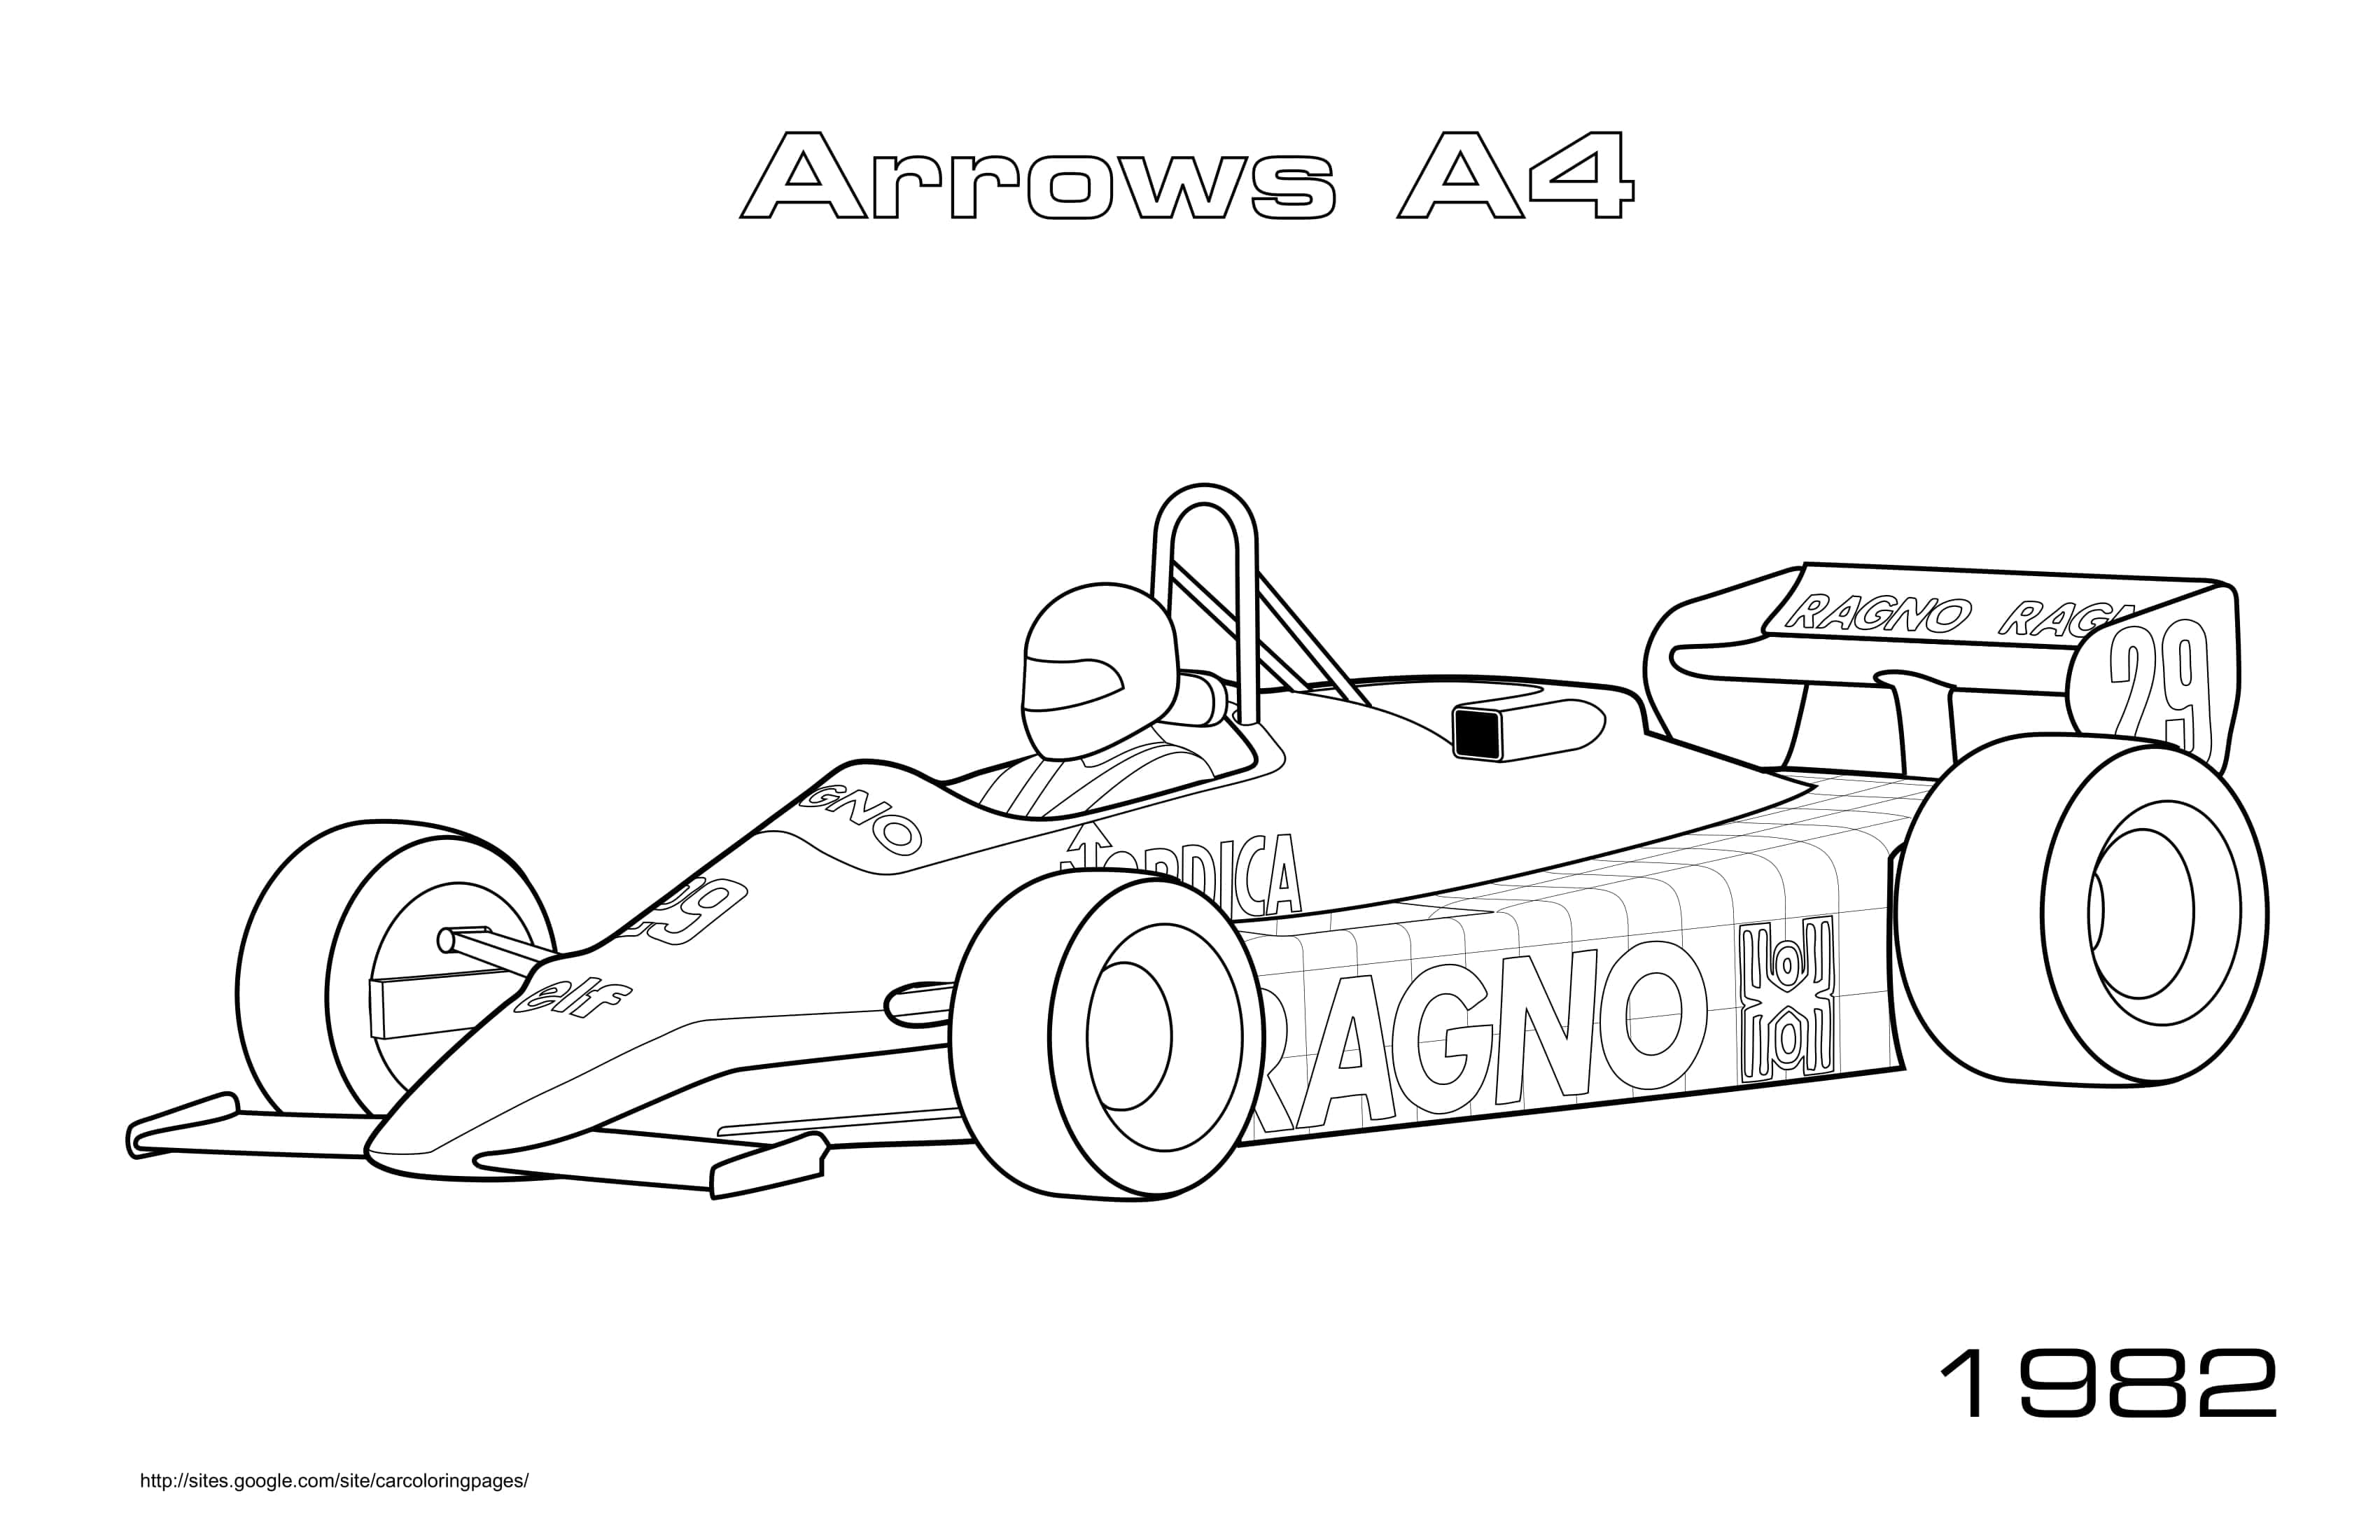 Arrows A4 1982